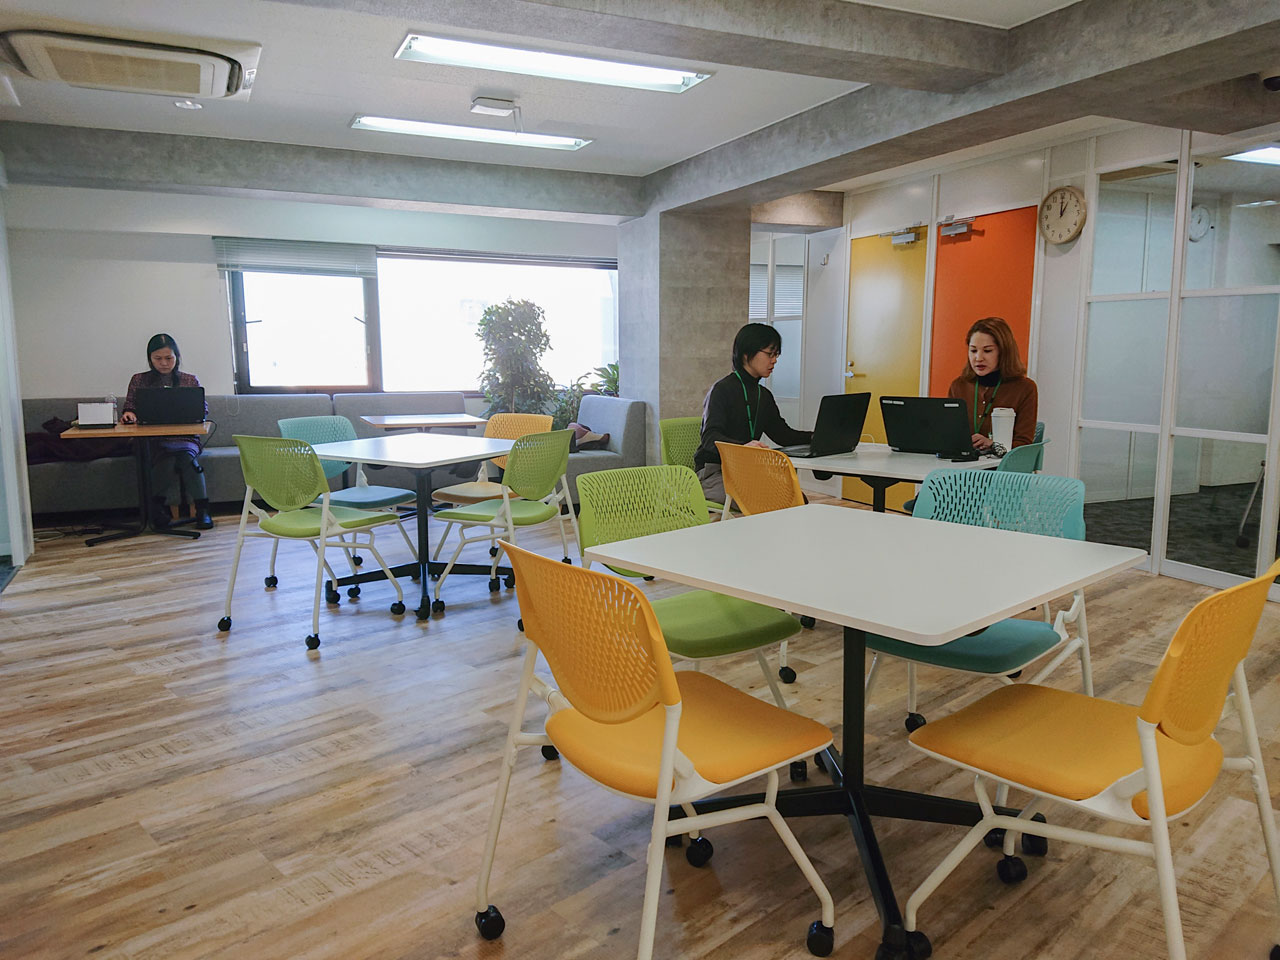 同社のエンジニアは日本全国各地で在住しているため、働き方はリモートが主体。週一回か在住地域によっては月に一回、東京本社または関西オフィスへ出社する。